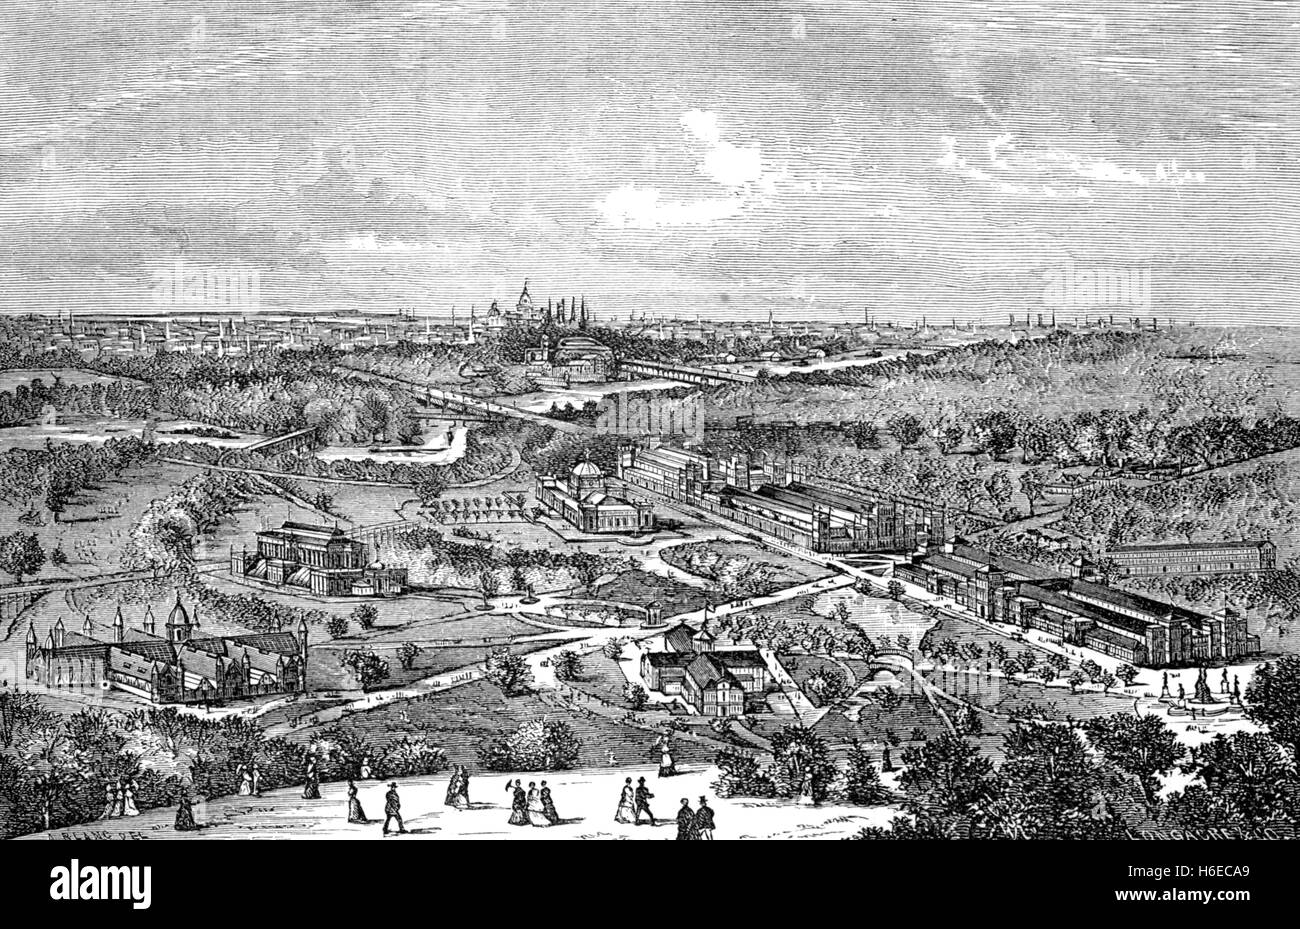 PHILADELPHIA CENTENNIAL EXPOSITION 1876 Stock Photo